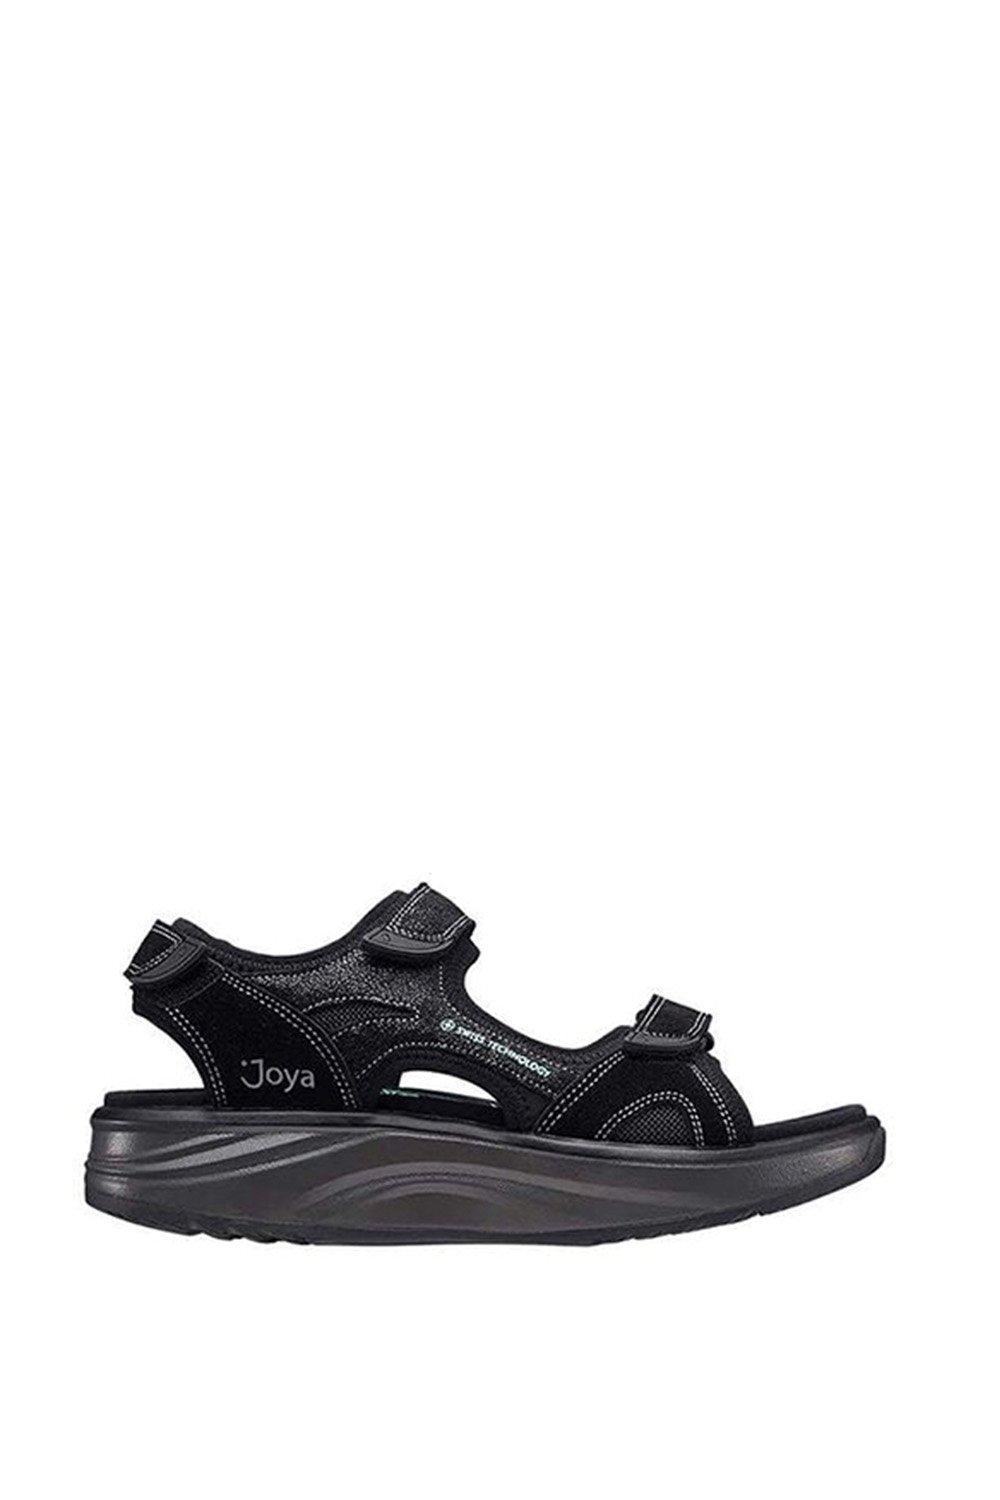 Женские сандалии широкого кроя Komodo в спортивном стиле с тройной застежкой-липучкой Joya, черный кроссовки joya zapatillas grau